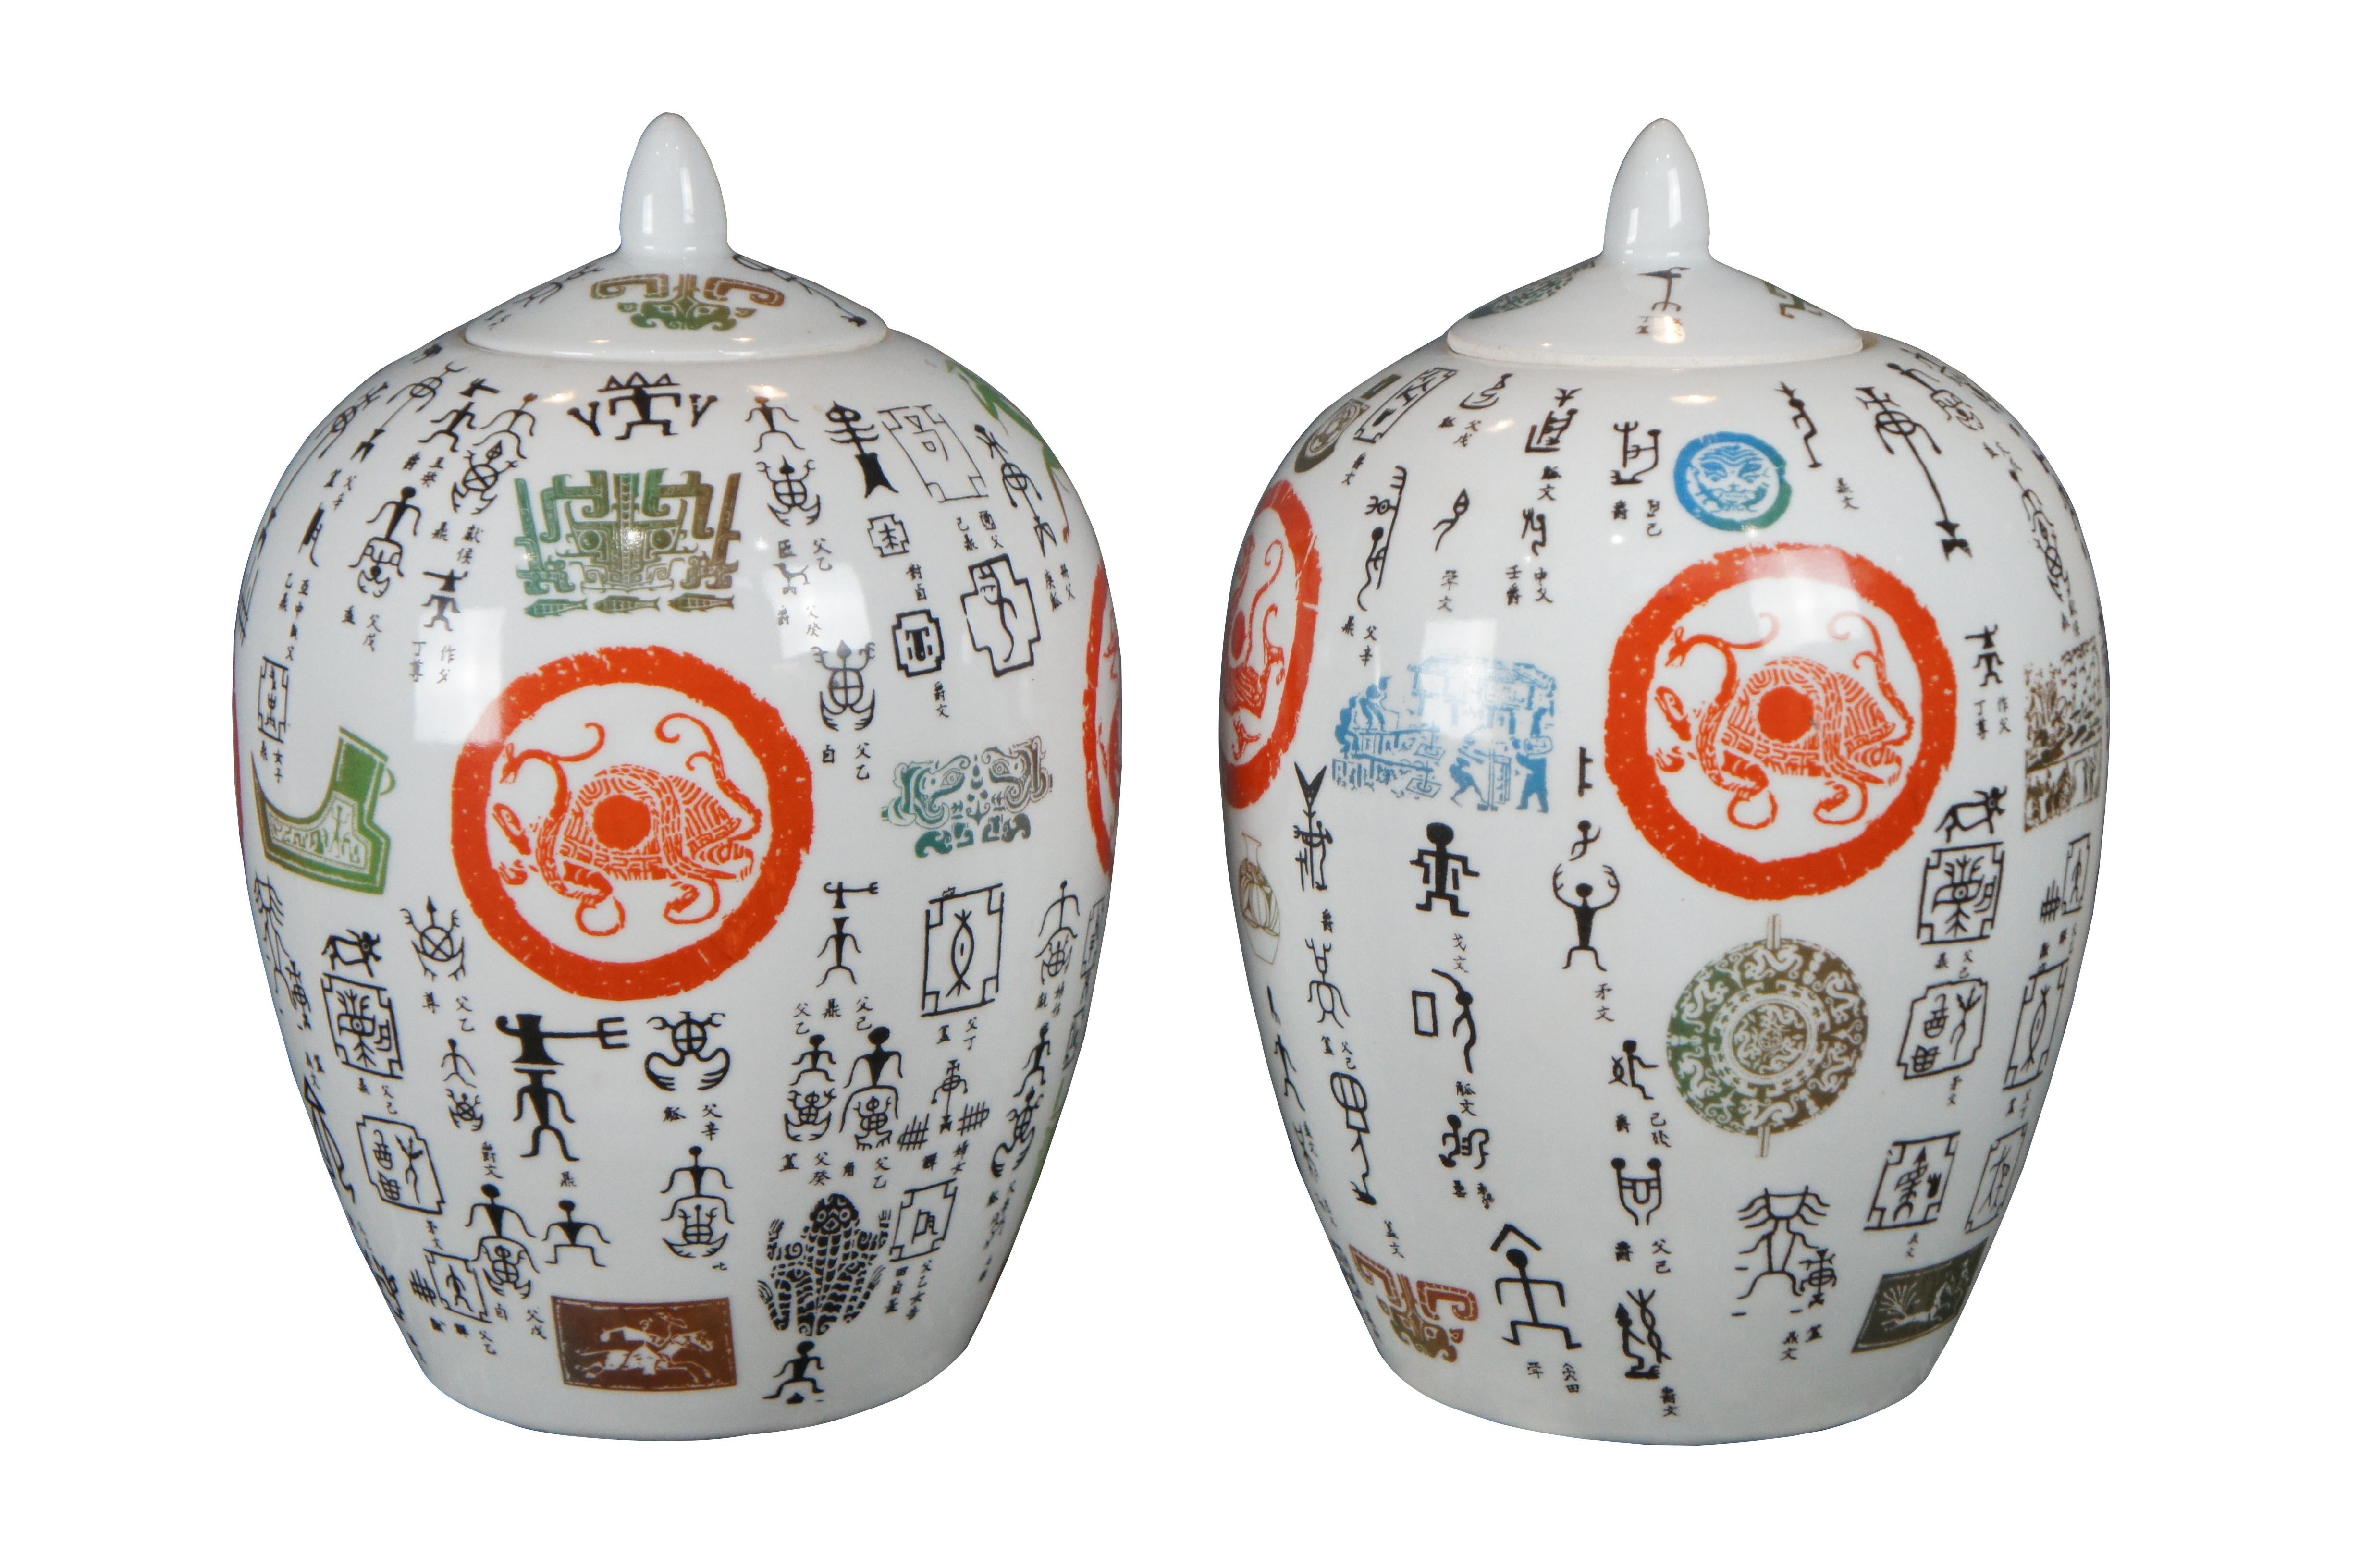 Paar chinesische Ingwergläser im Famille-Rose-Stil. Hergestellt aus Porzellan mit einem einzigartigen Äußeren, auf dem Tiere und Figuren abgebildet sind. Die Urne wirkt wie ein einzigartiger Schmelztiegel, der Motive aus Mesoamerika und Ägypten